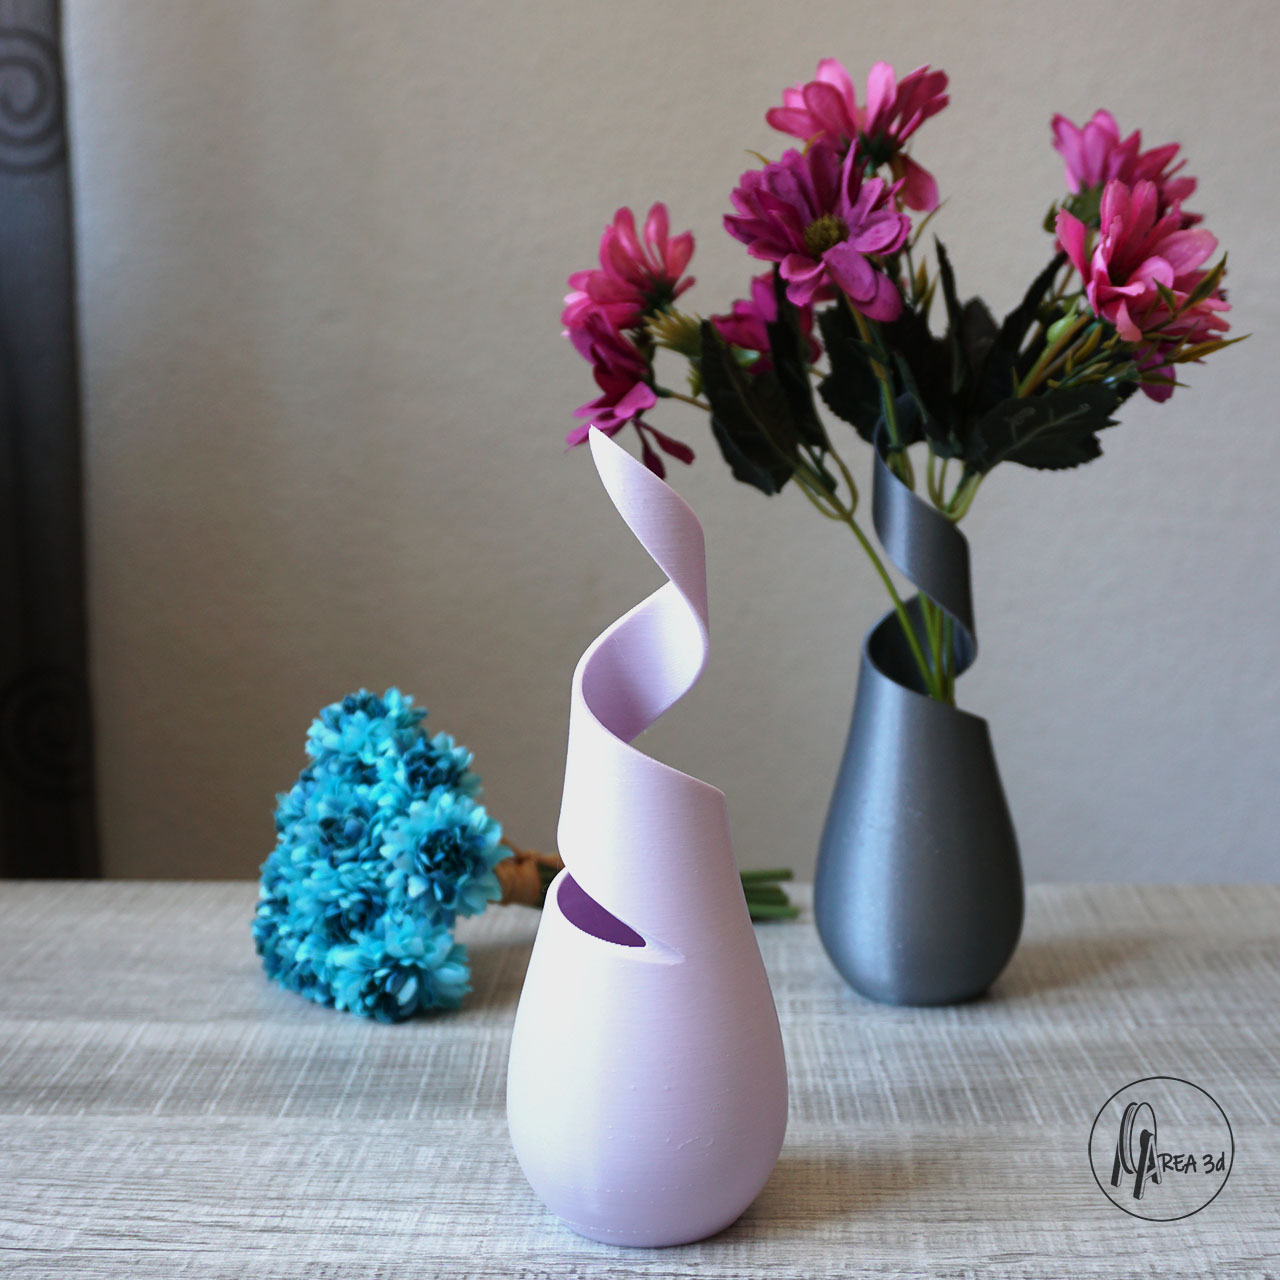 3D-printed Vase